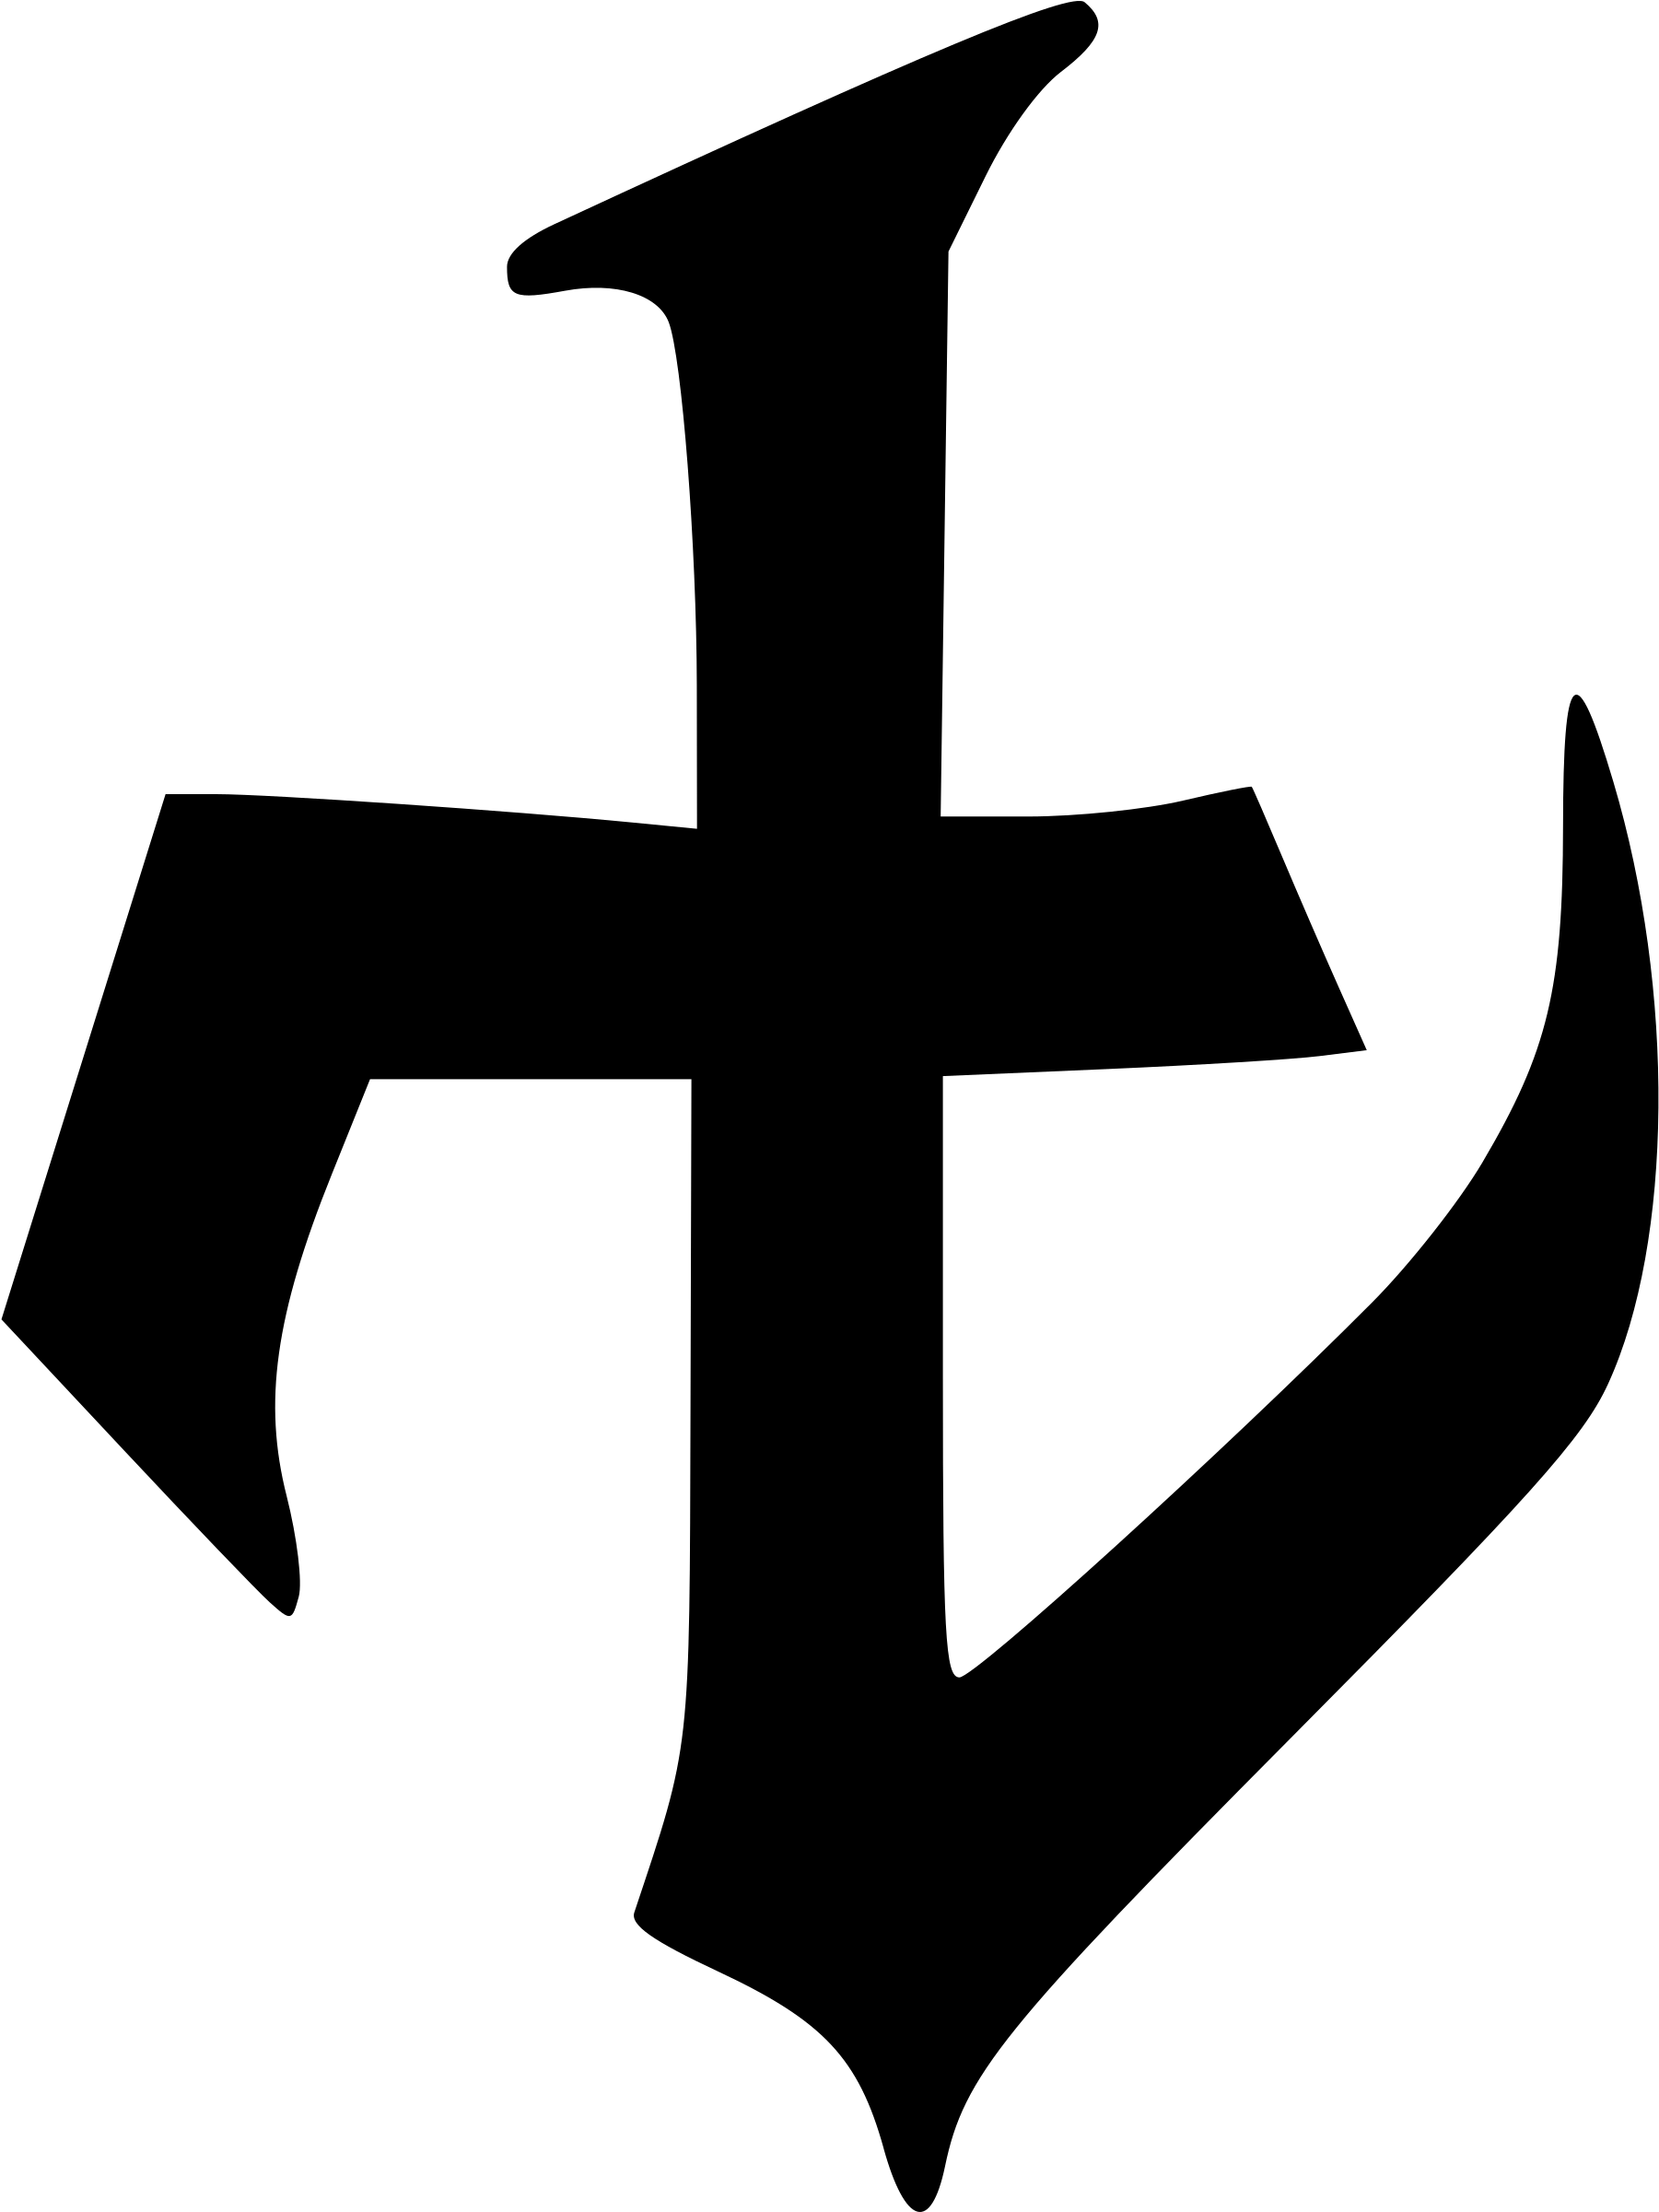 Gothic Glyph 5 - Gothic Glyph (2400x2400)